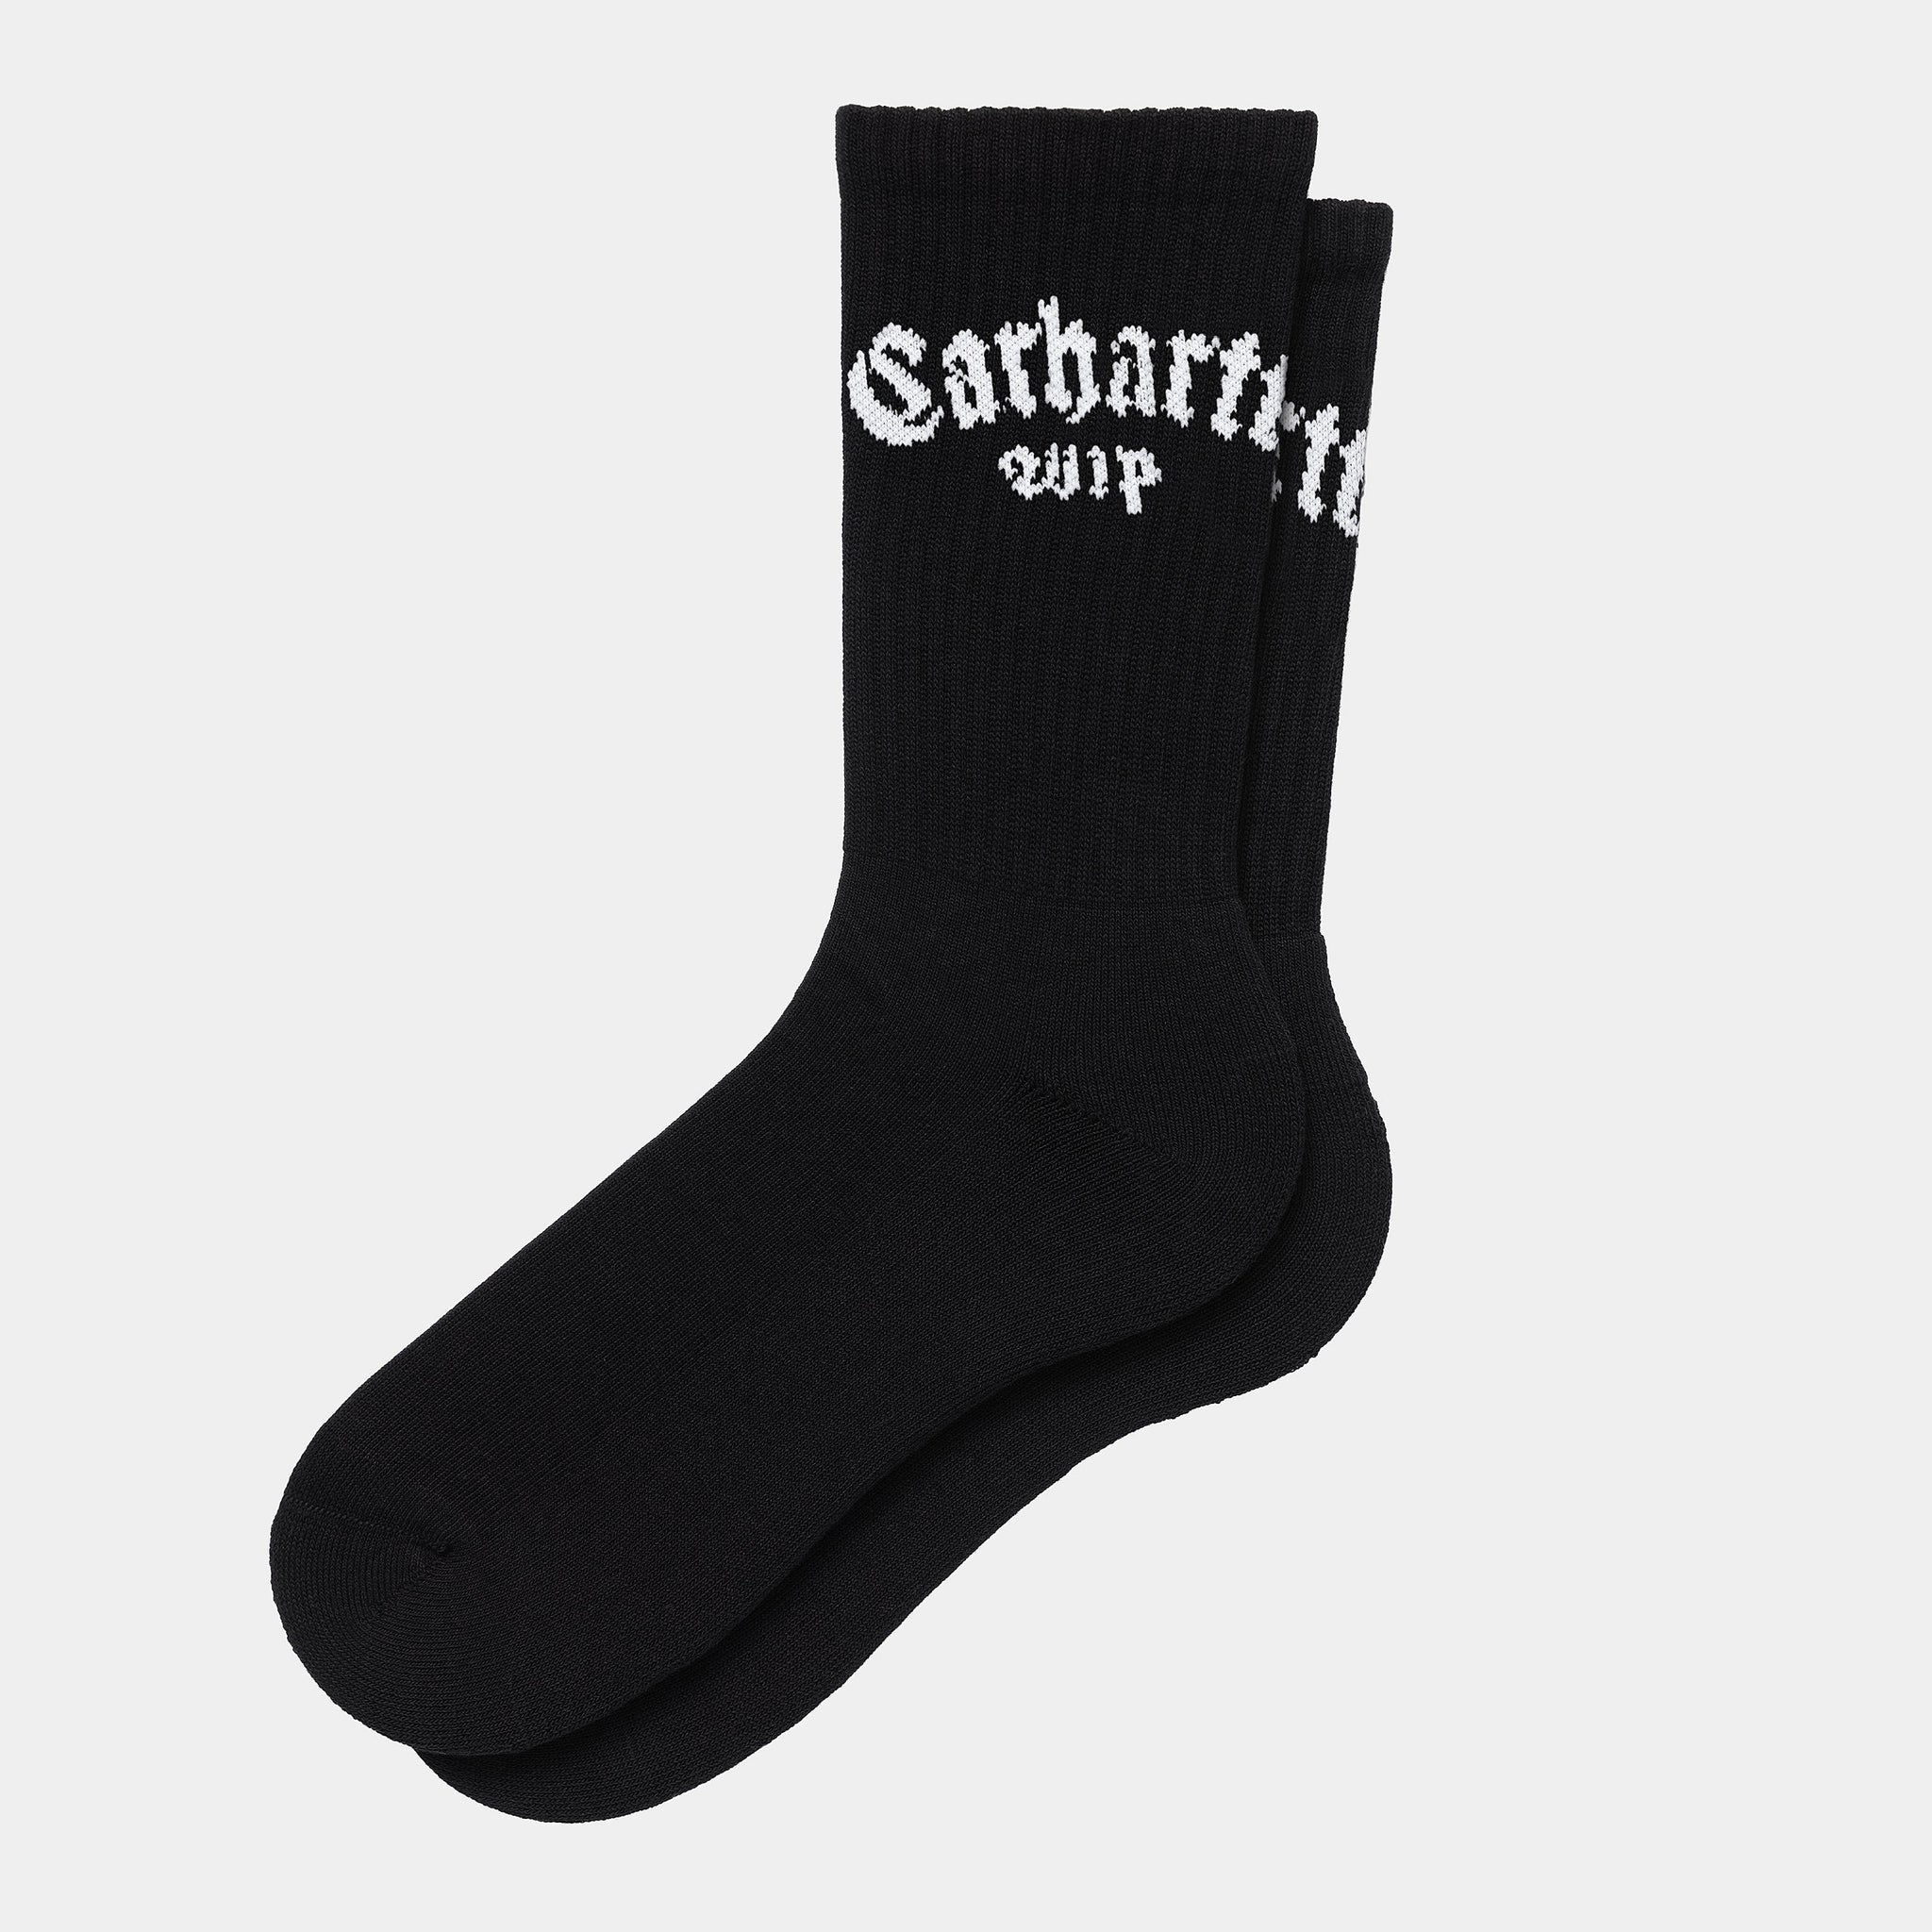 Carhartt WIP Onyx Socks (Black / White)